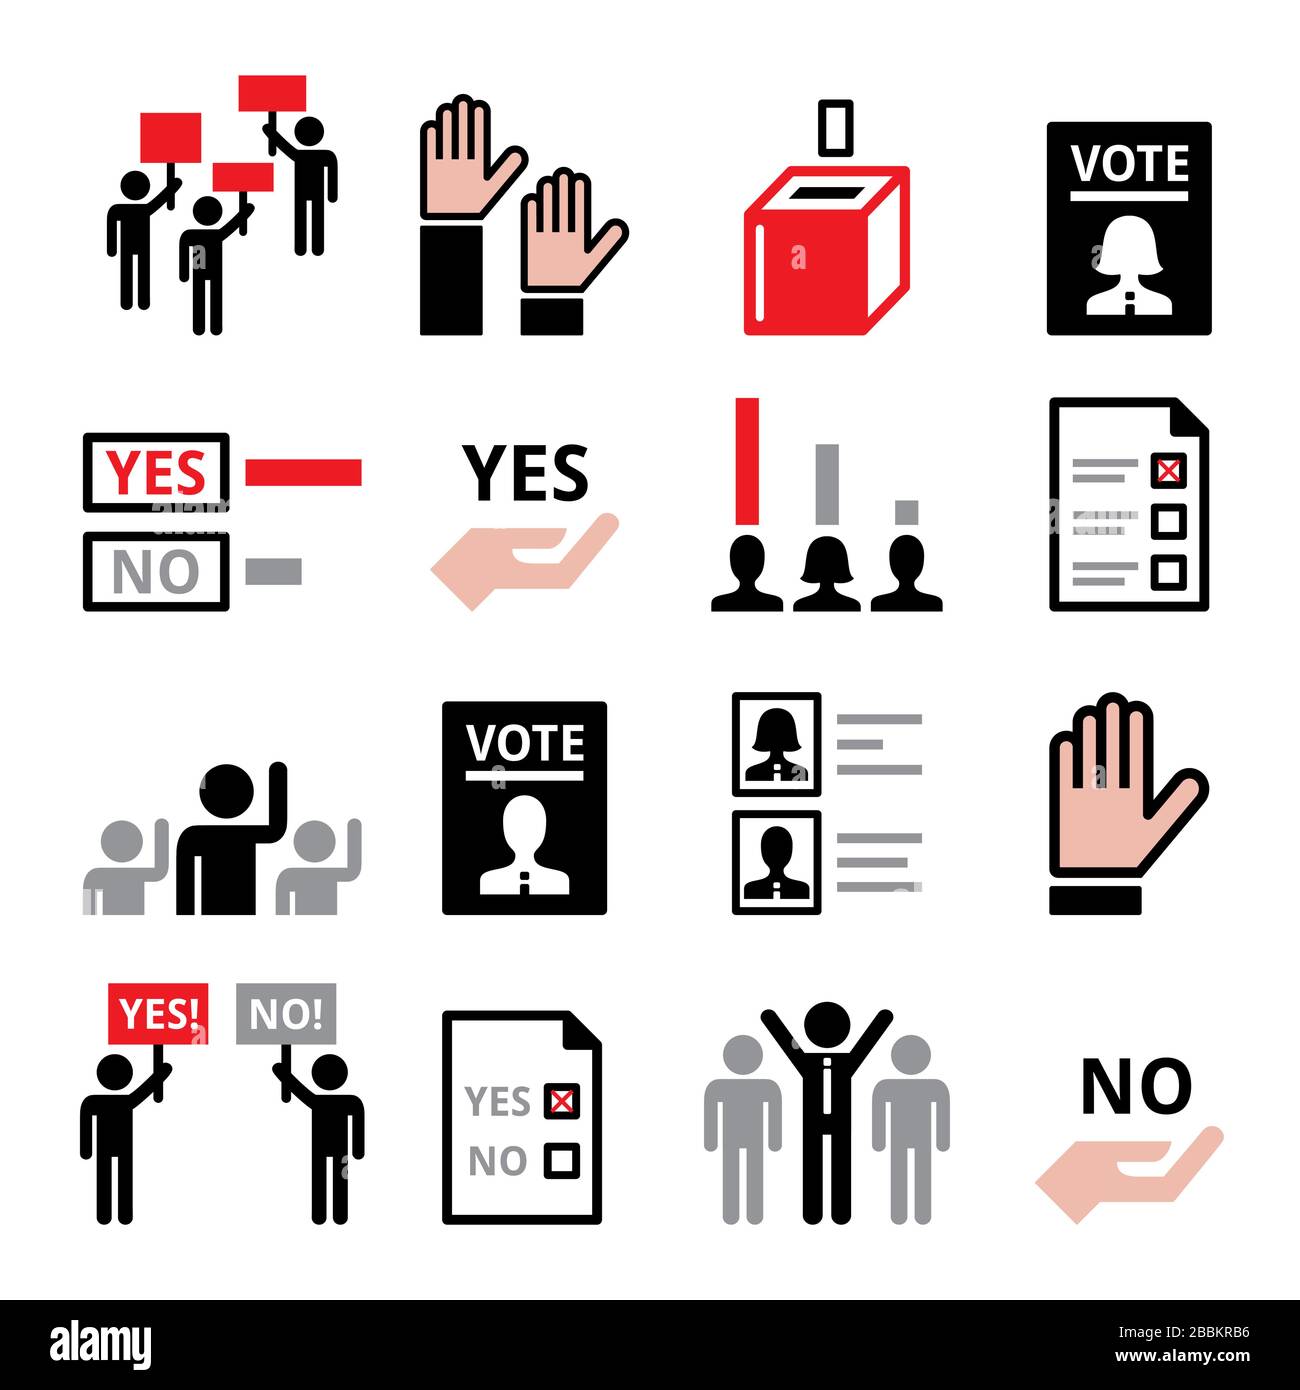 Démocratie, vote du parti politique ou du nouveau président, société moderne avec un ensemble d'icônes vectorielles sur l'égalité des droits de l'homme Illustration de Vecteur